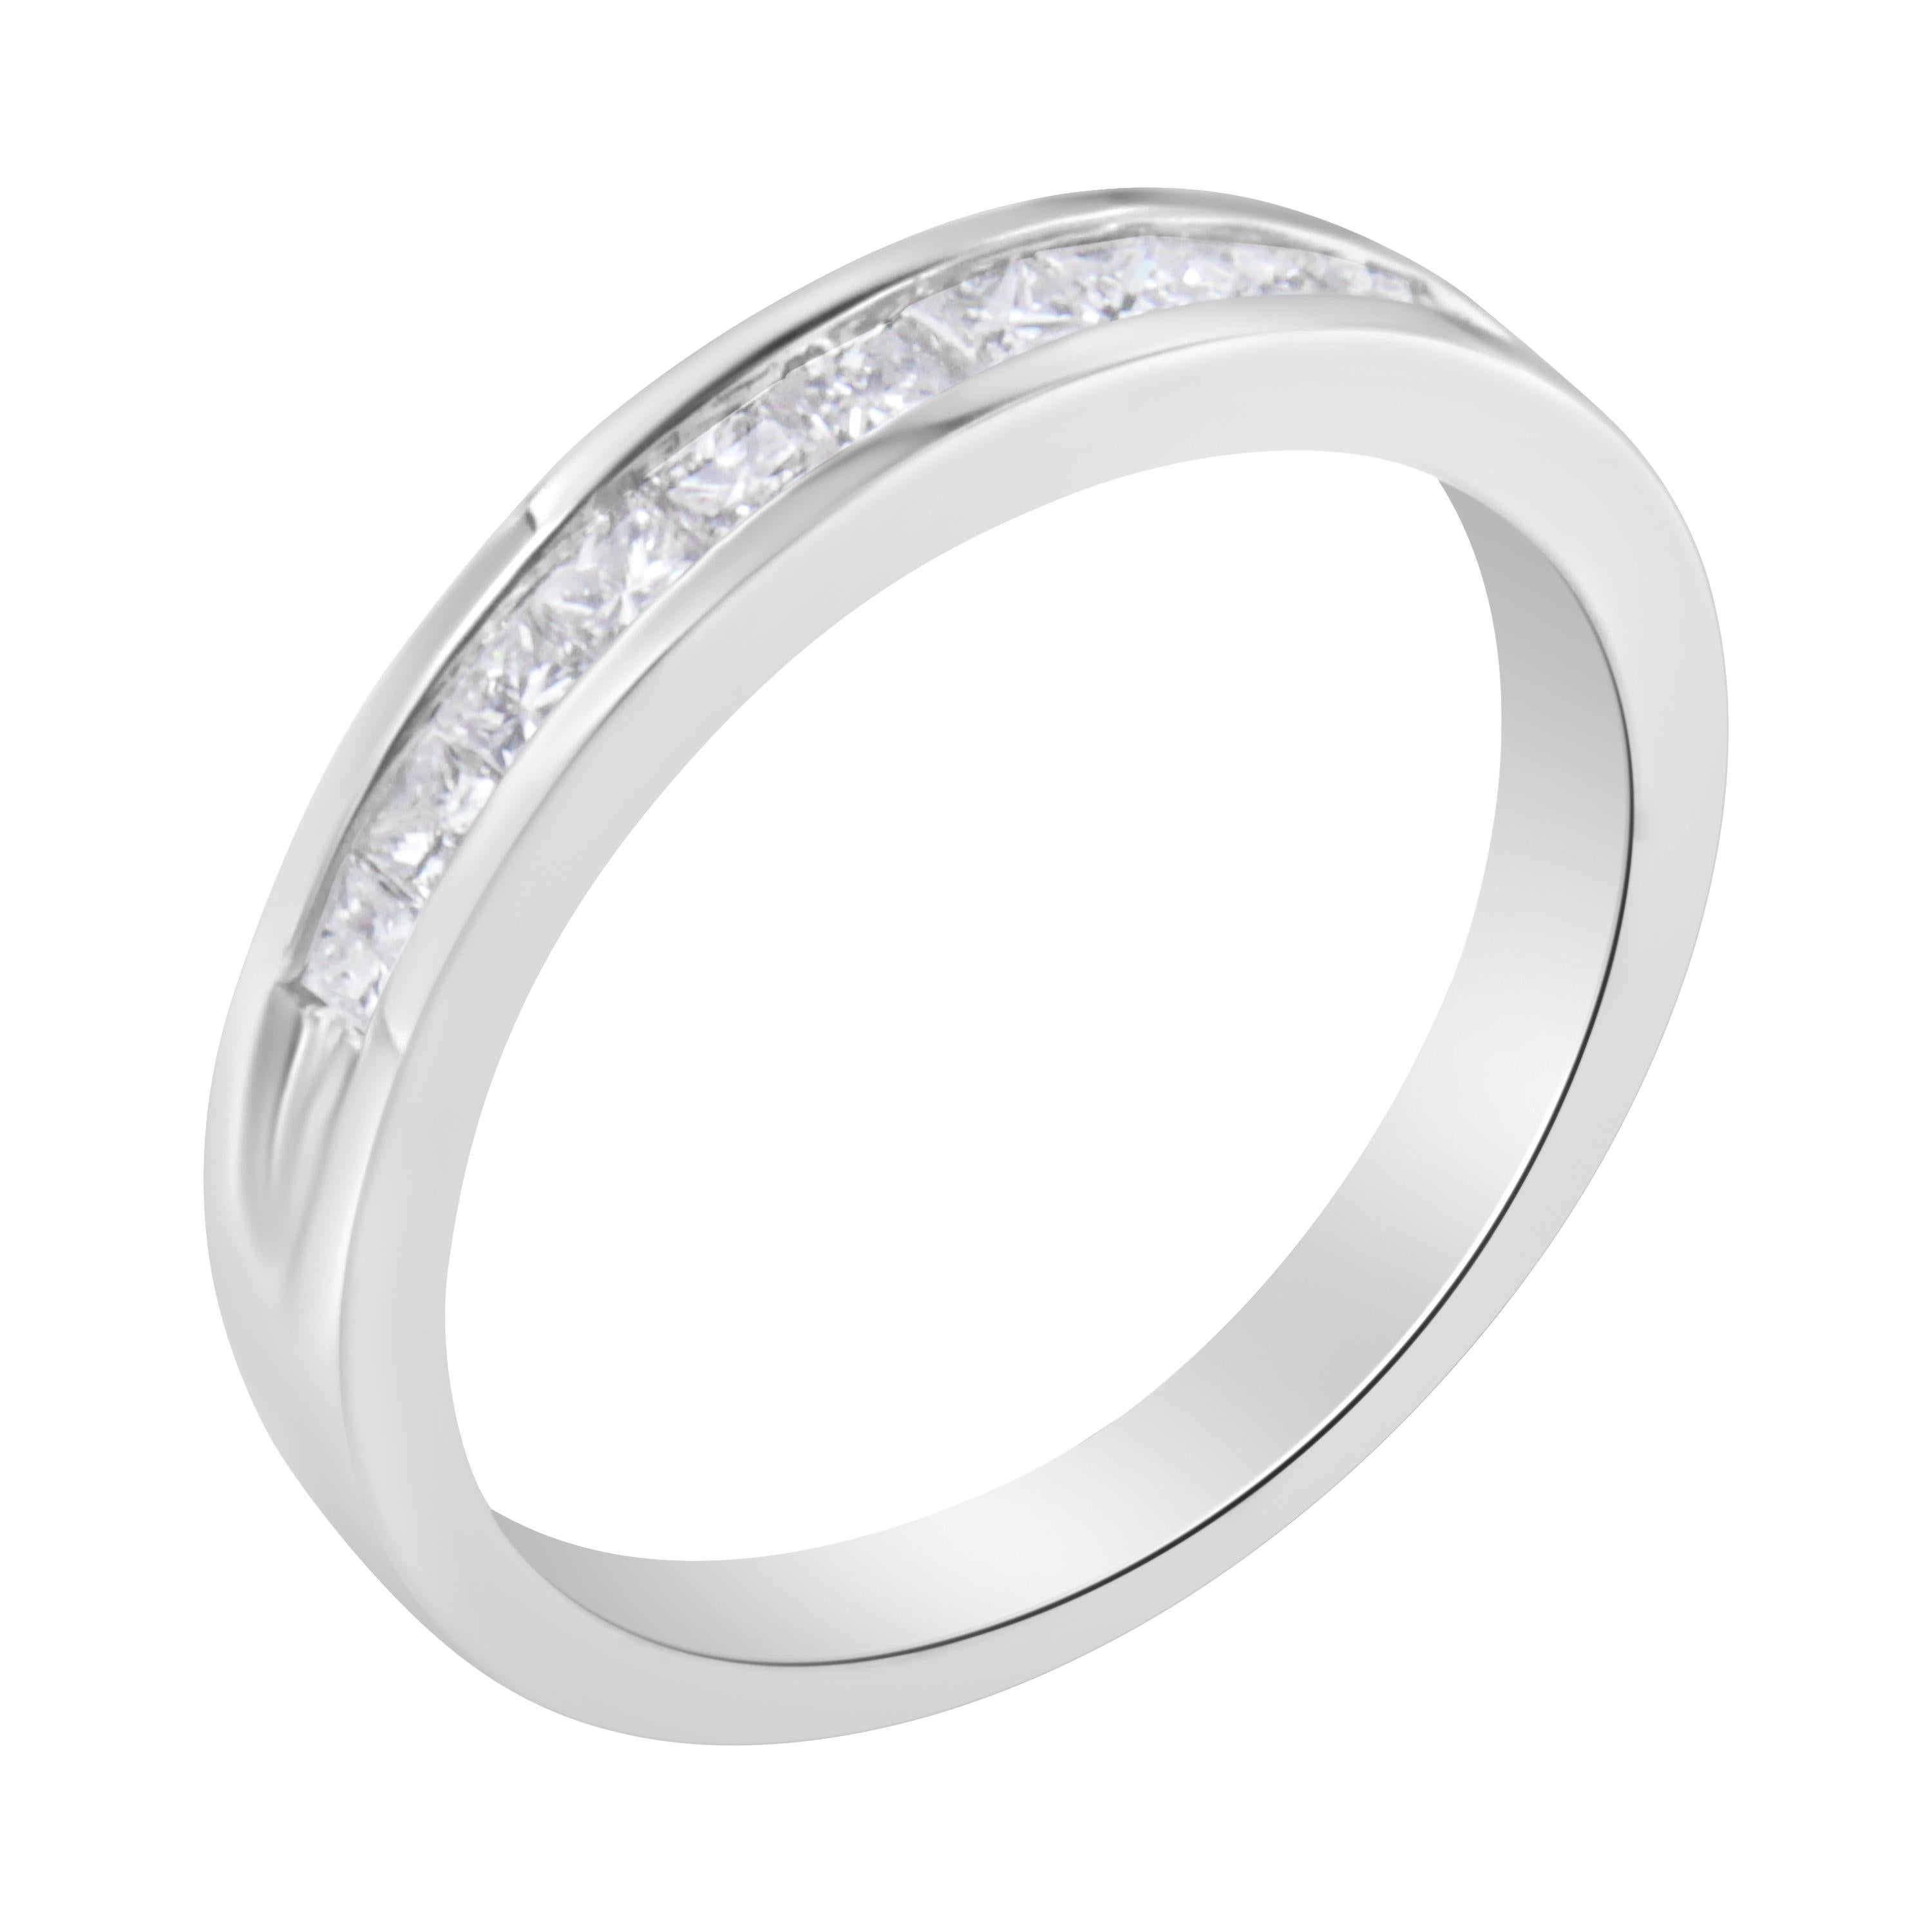 For Sale:  IGI Certified 18k White Gold 1/2 Carat Diamond Wedding Band Ring 3